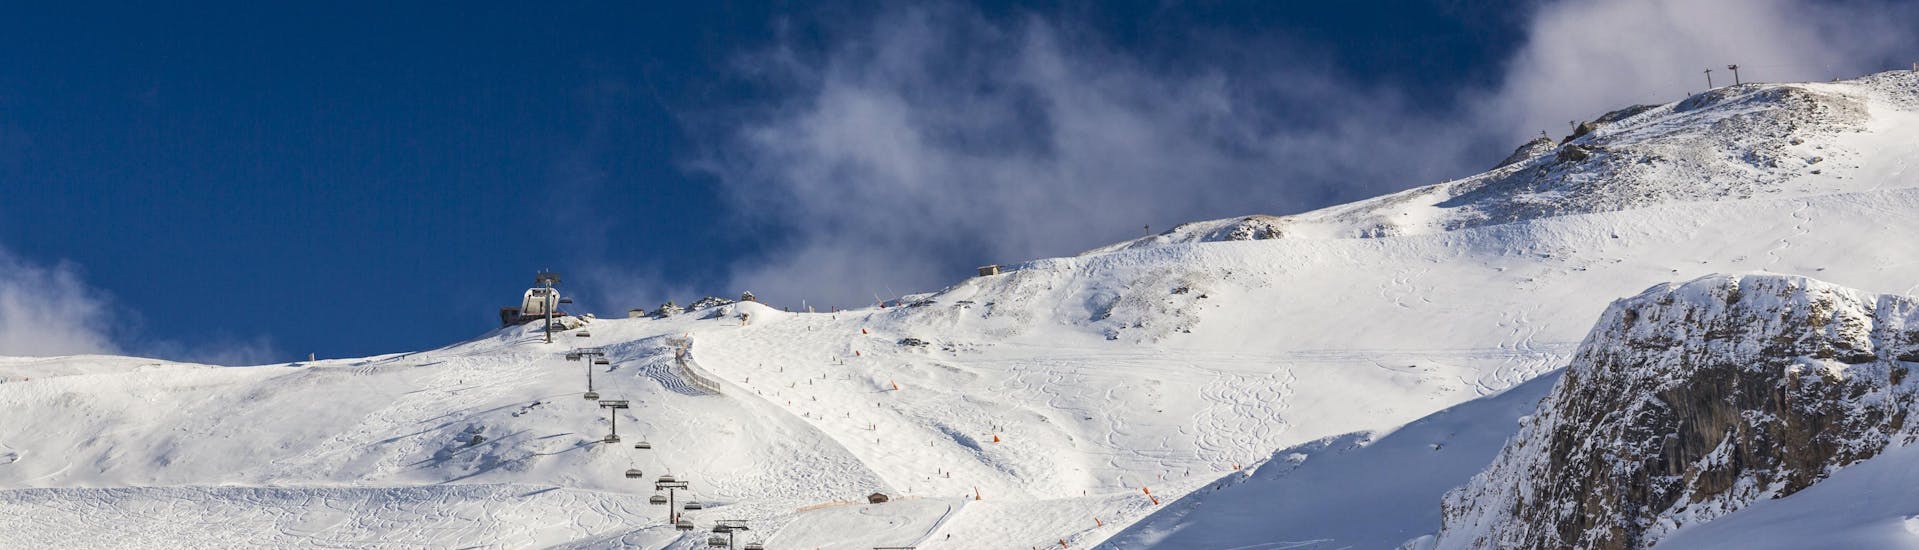 Ausblick auf die sonnige Berglandschaft beim Skifahren lernen mit den Skischulen in Galtür.